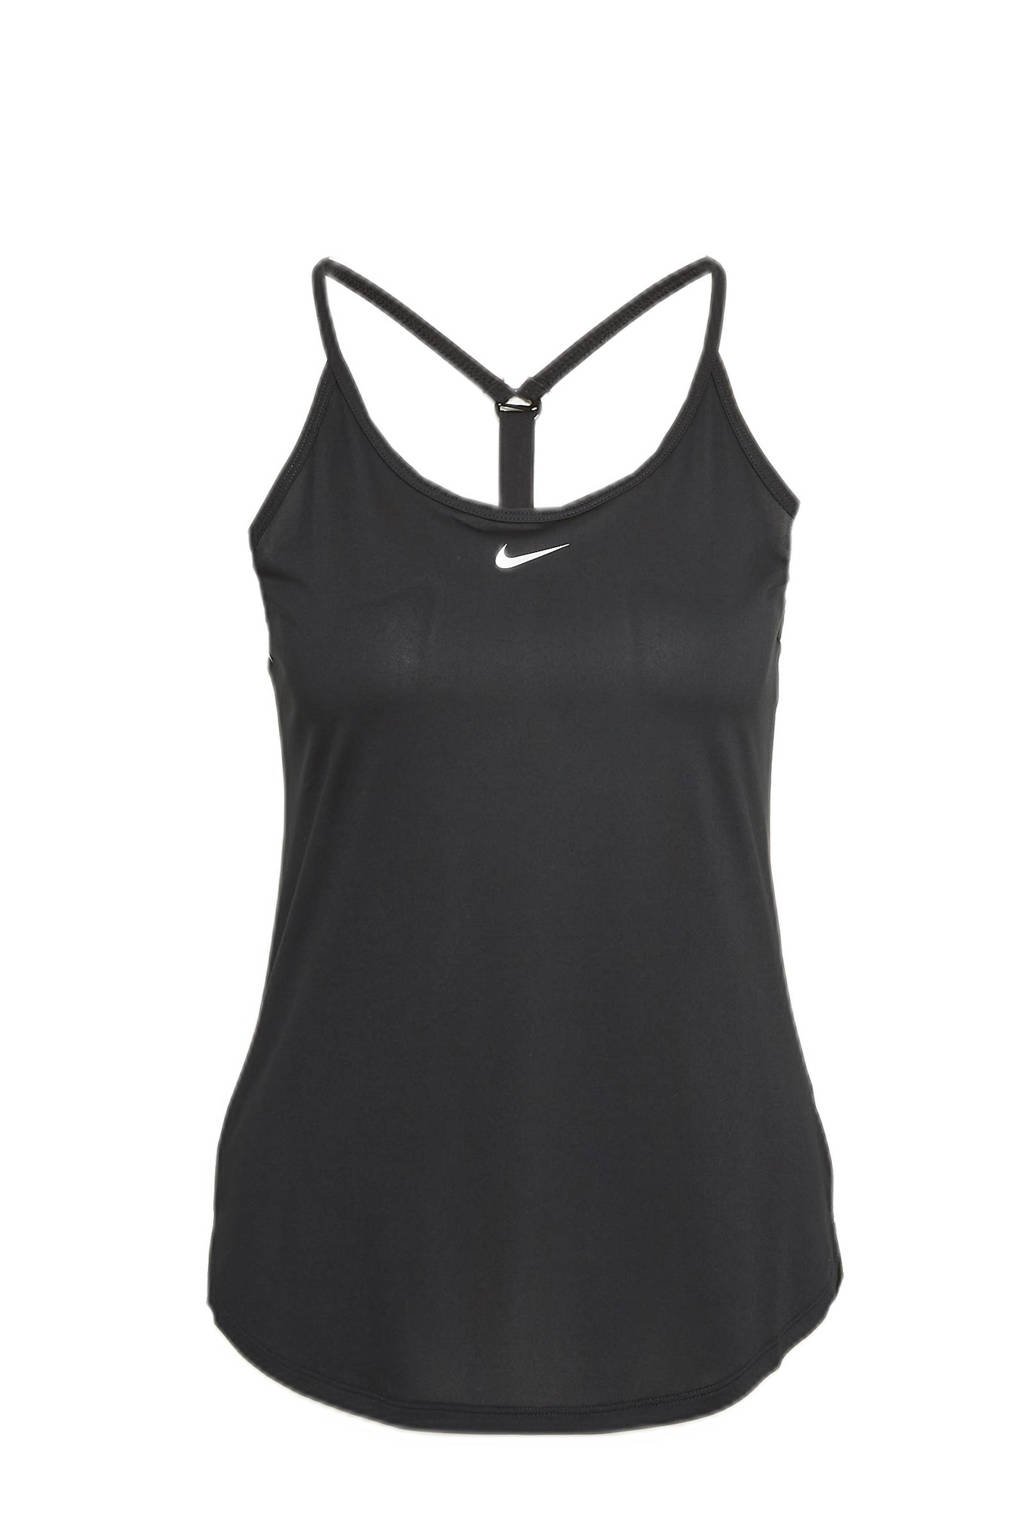 Turbulentie Taiko buik paar Nike sporttop zwart/wit kopen? | Morgen in huis | wehkamp